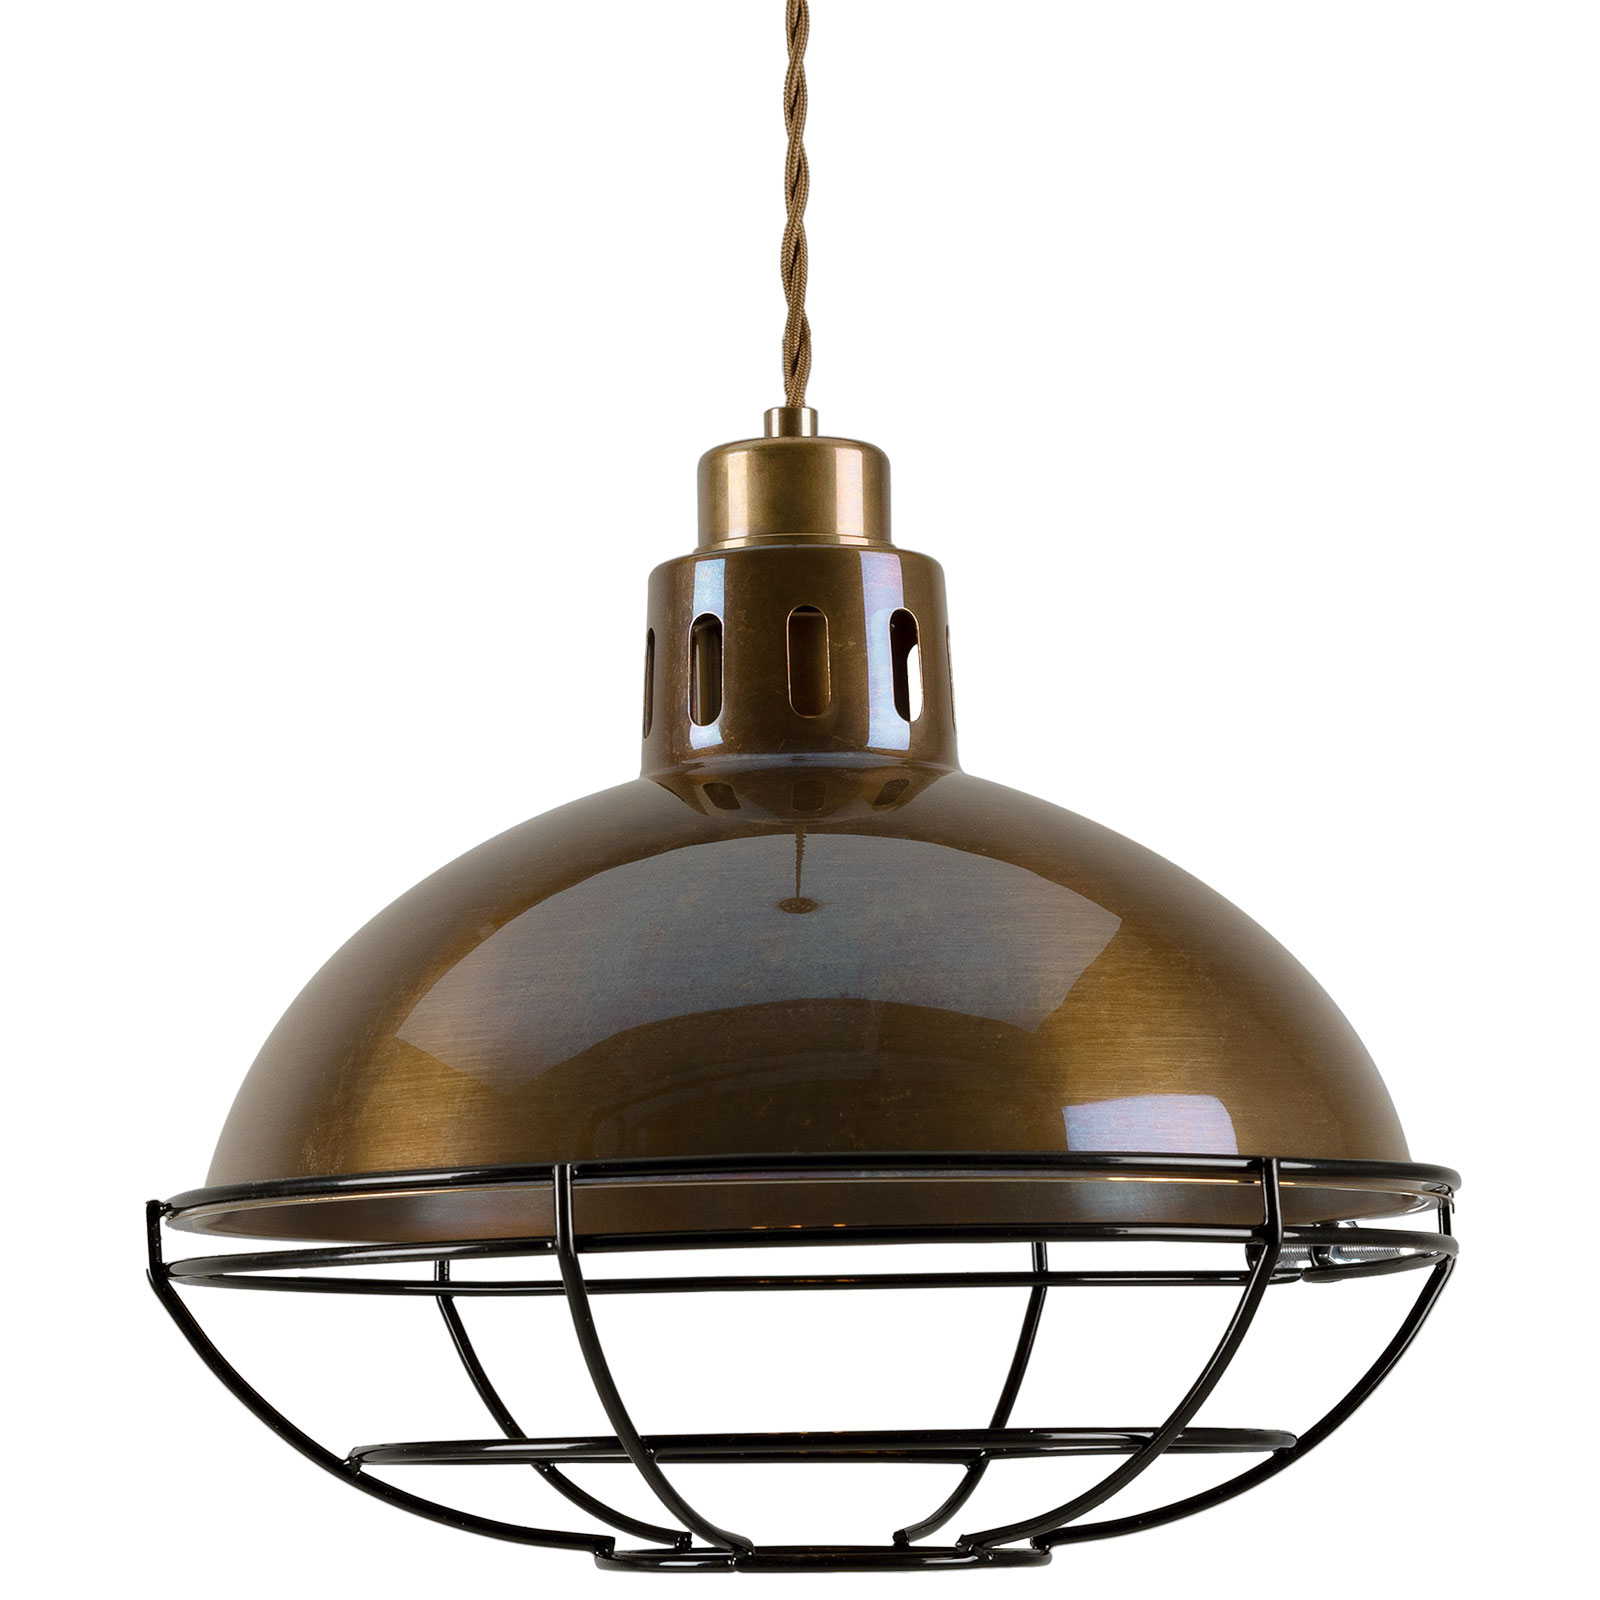 Klassische Fabriklampe aus Messing mit Schutzgitter-Käfig, 32 cm